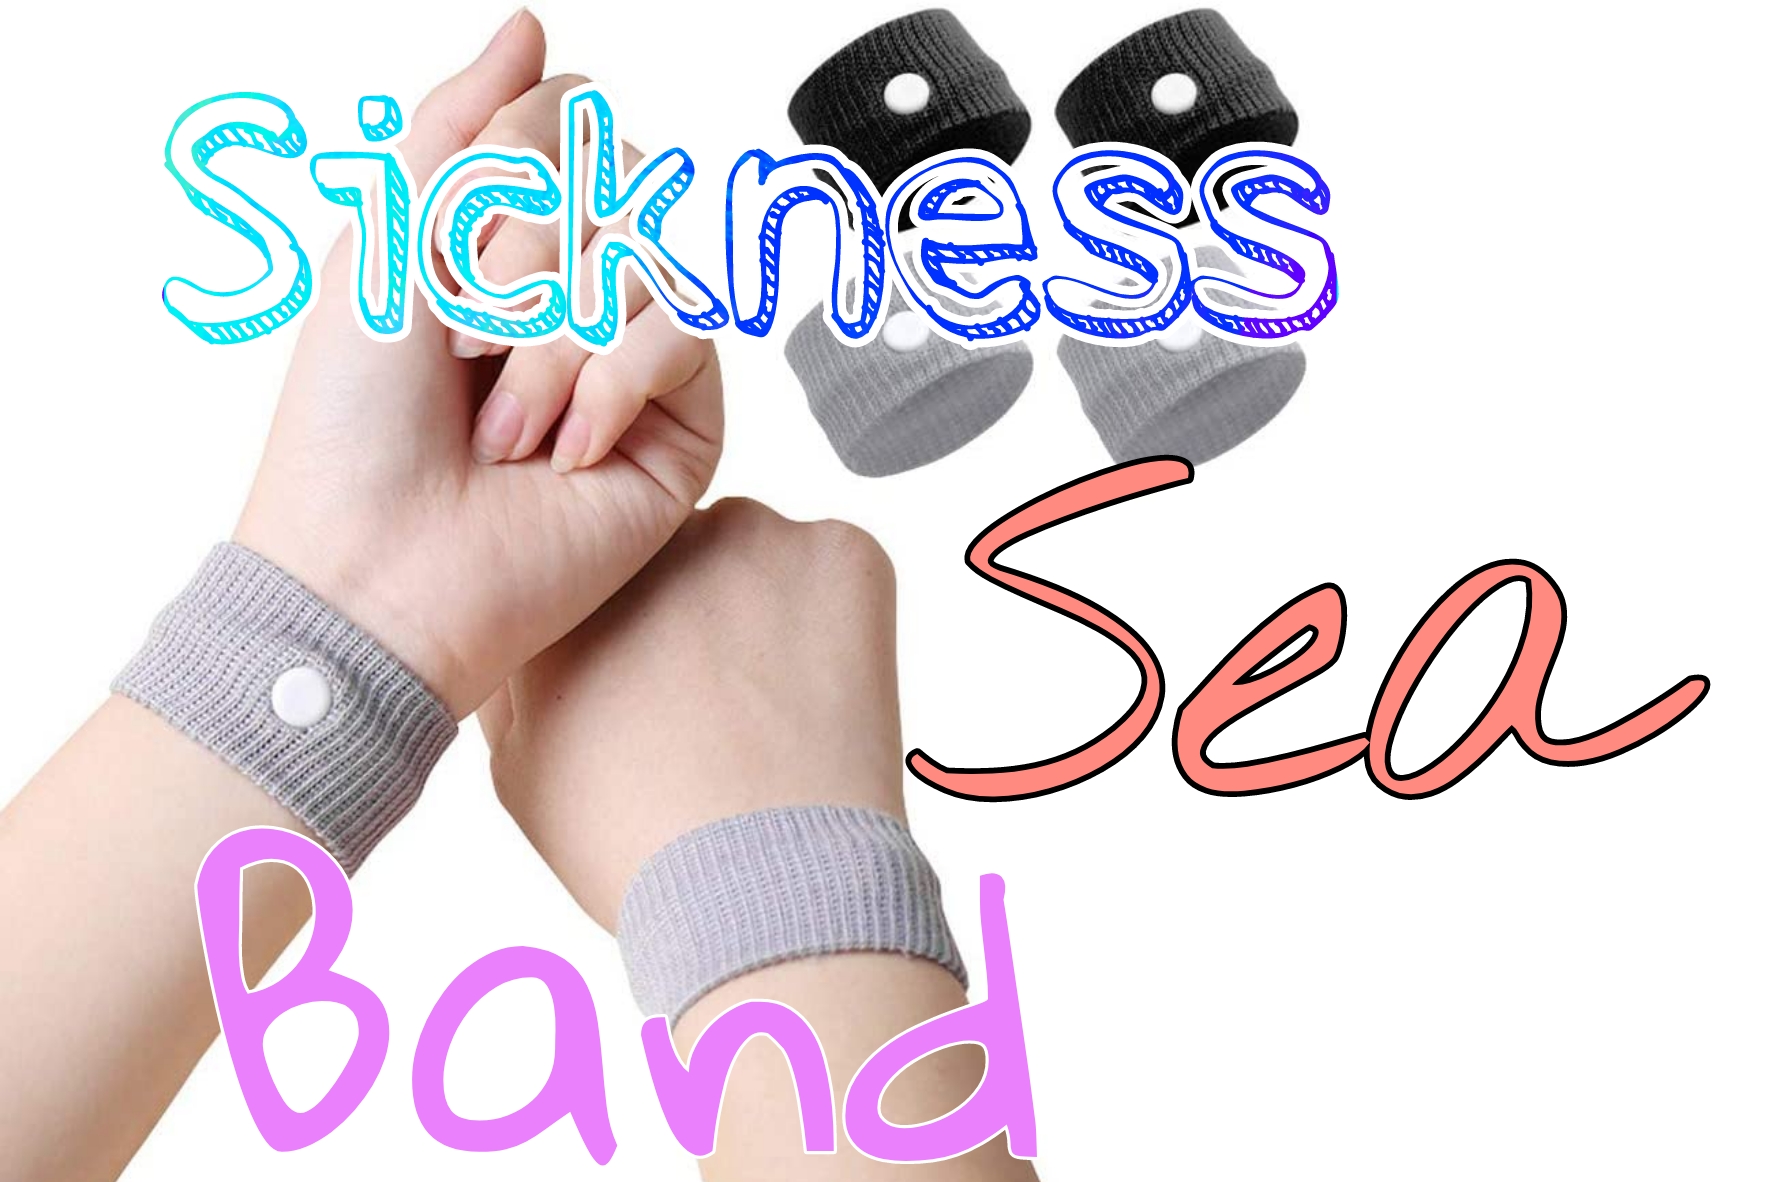 sea sick bands